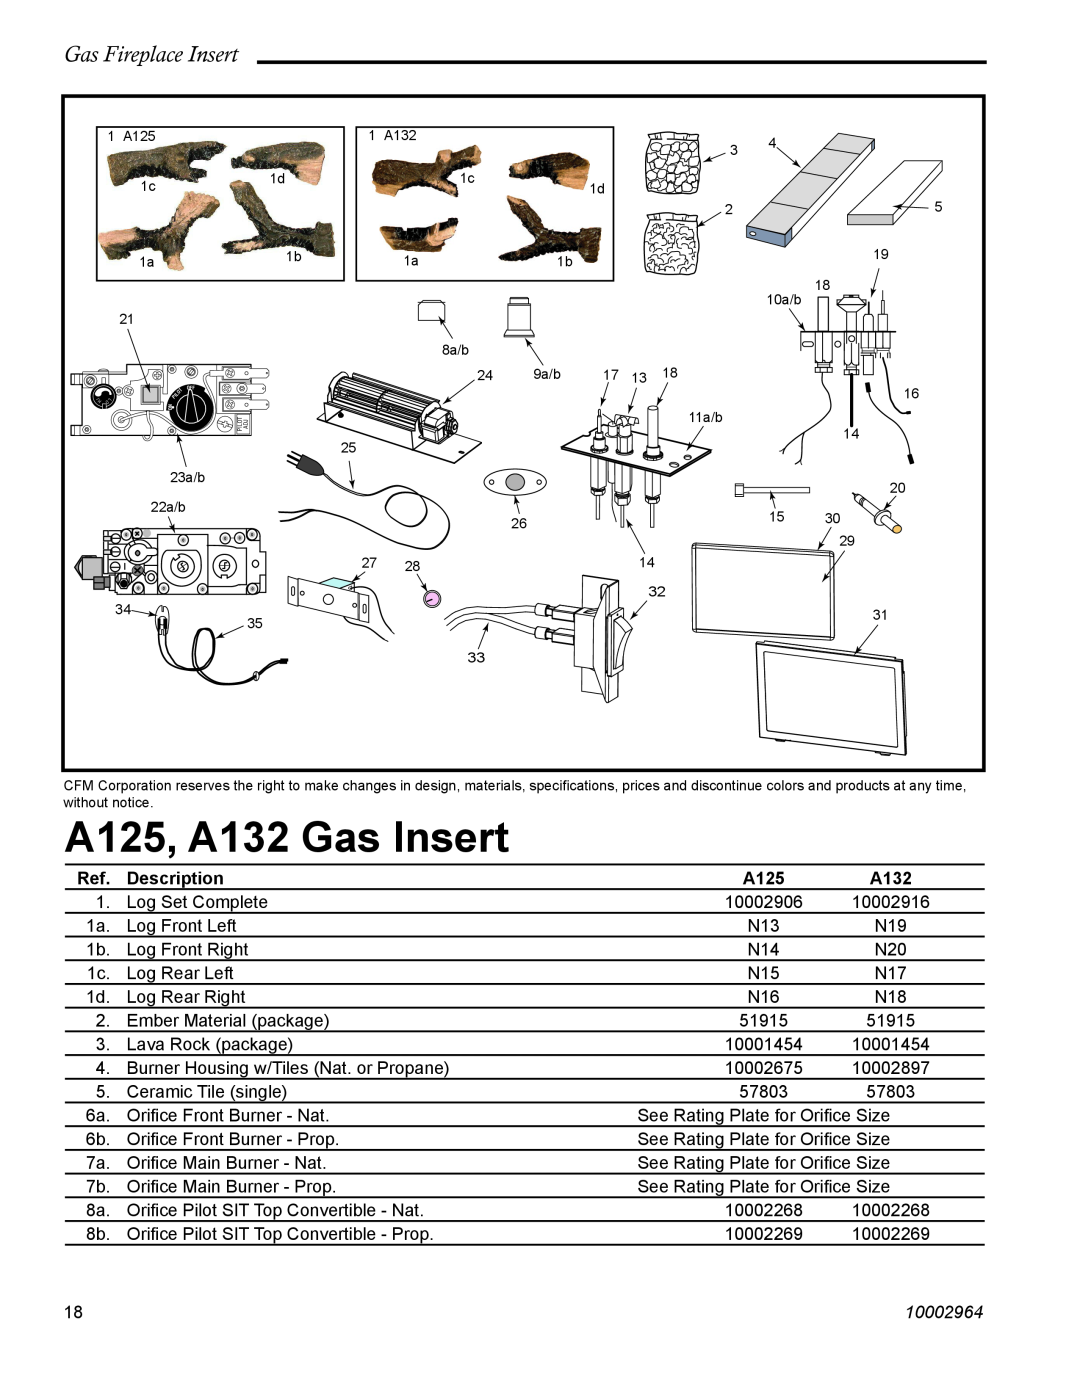 CFM Corporation manual A125, A132 Gas Insert, Gas Fireplace Insert, Description, 10002964 